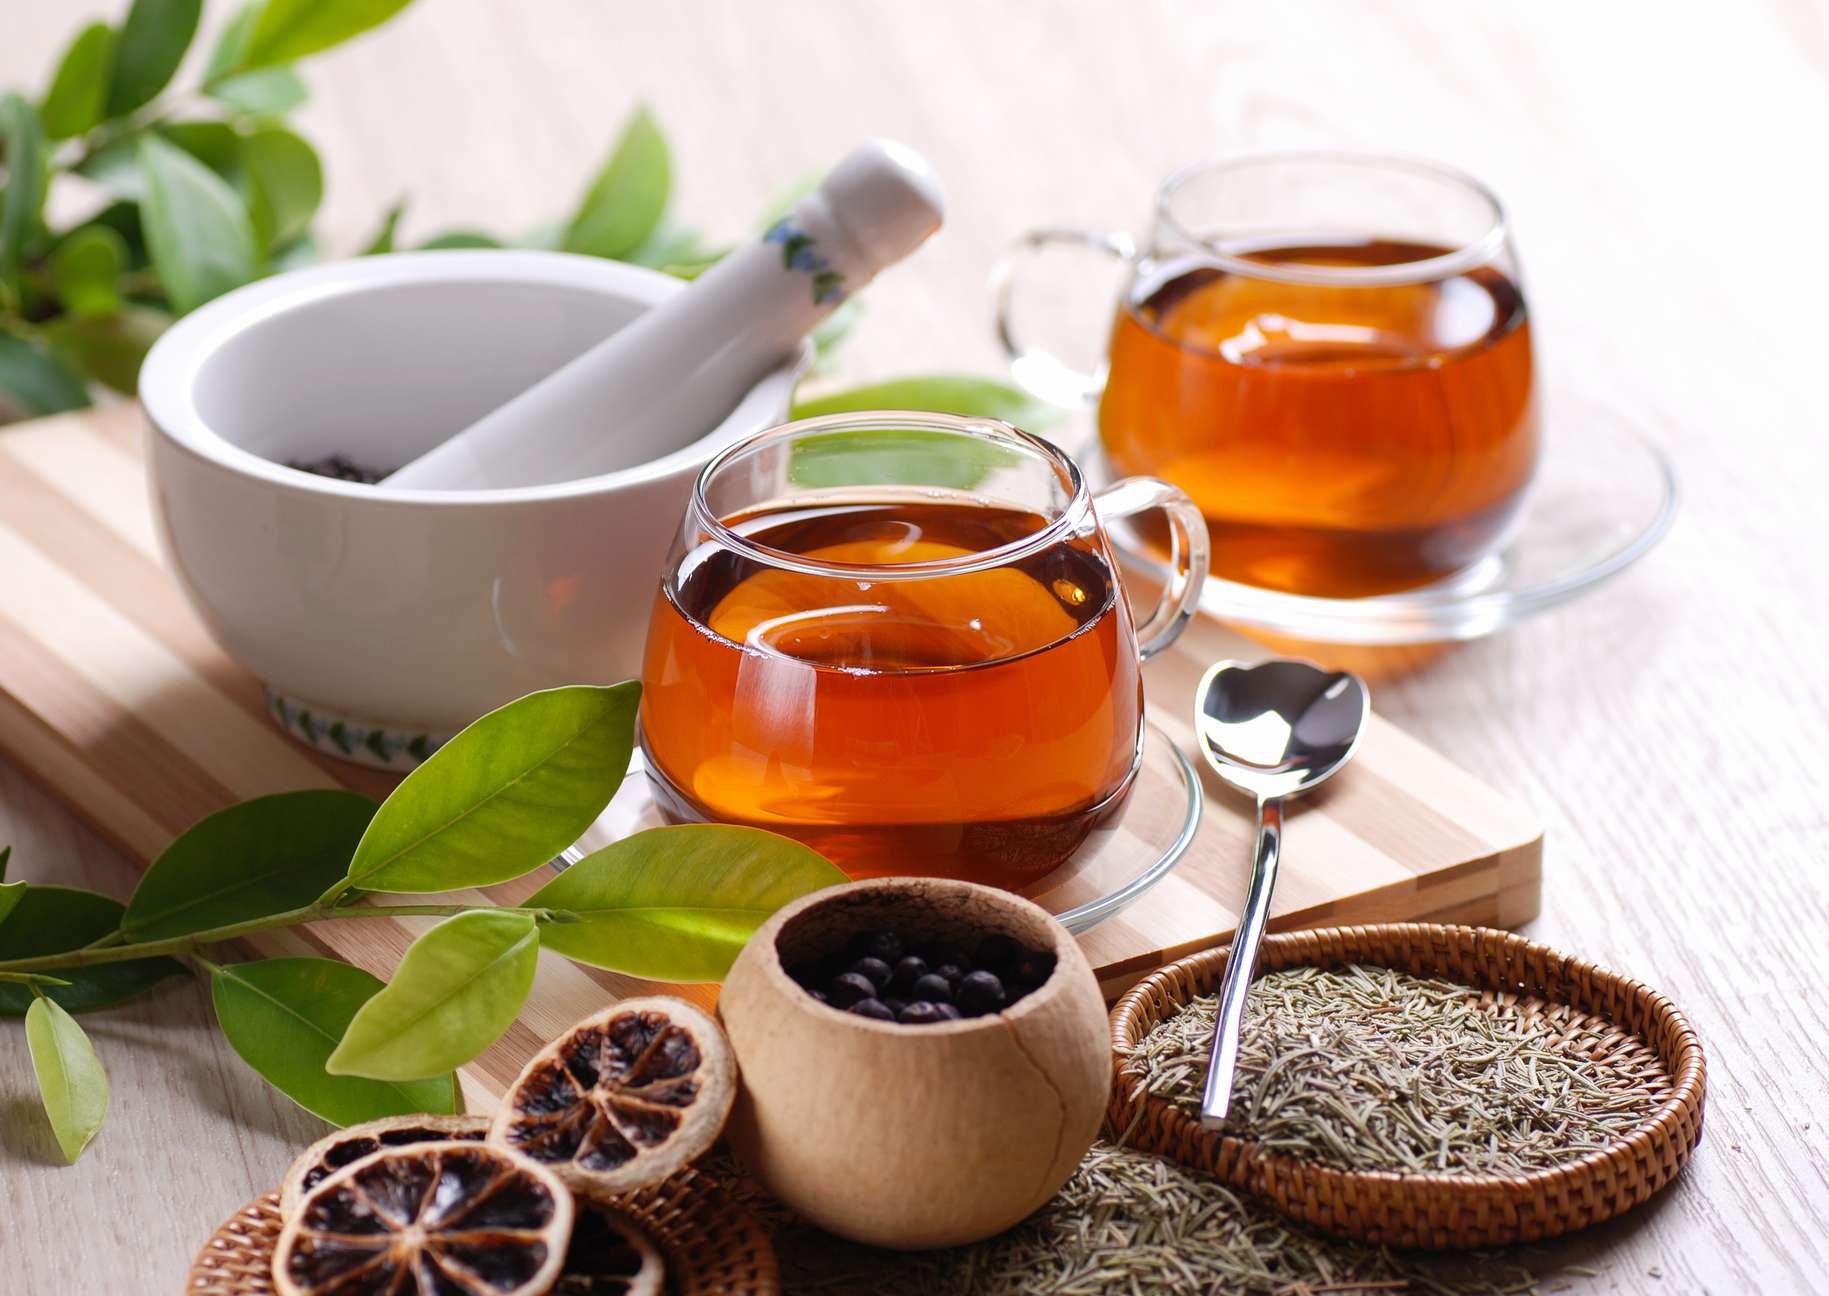 Чай с добавлением лаврушки обладает лечебными свойствами и укрепляет организм